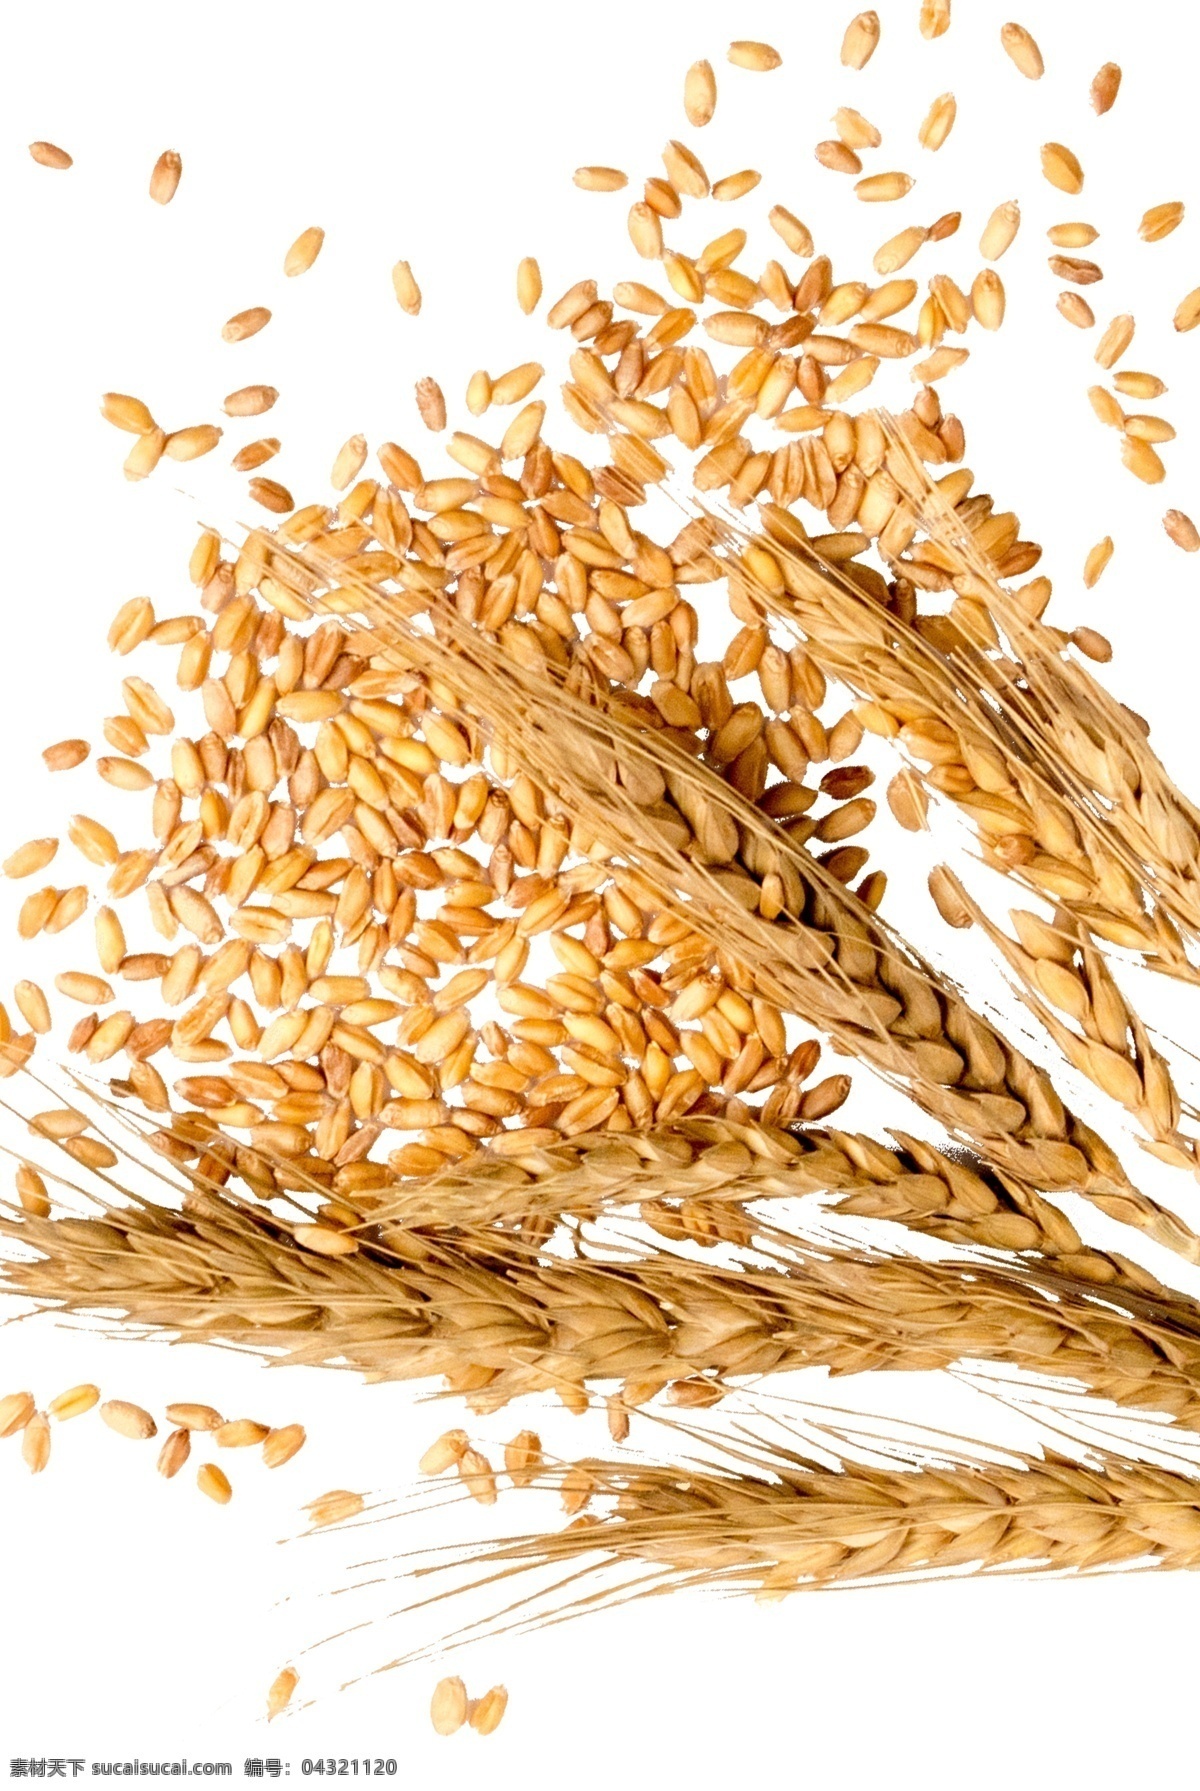 麦穗麦粒图片 麦穗 麦粒 麦子 大麦 小麦 分层